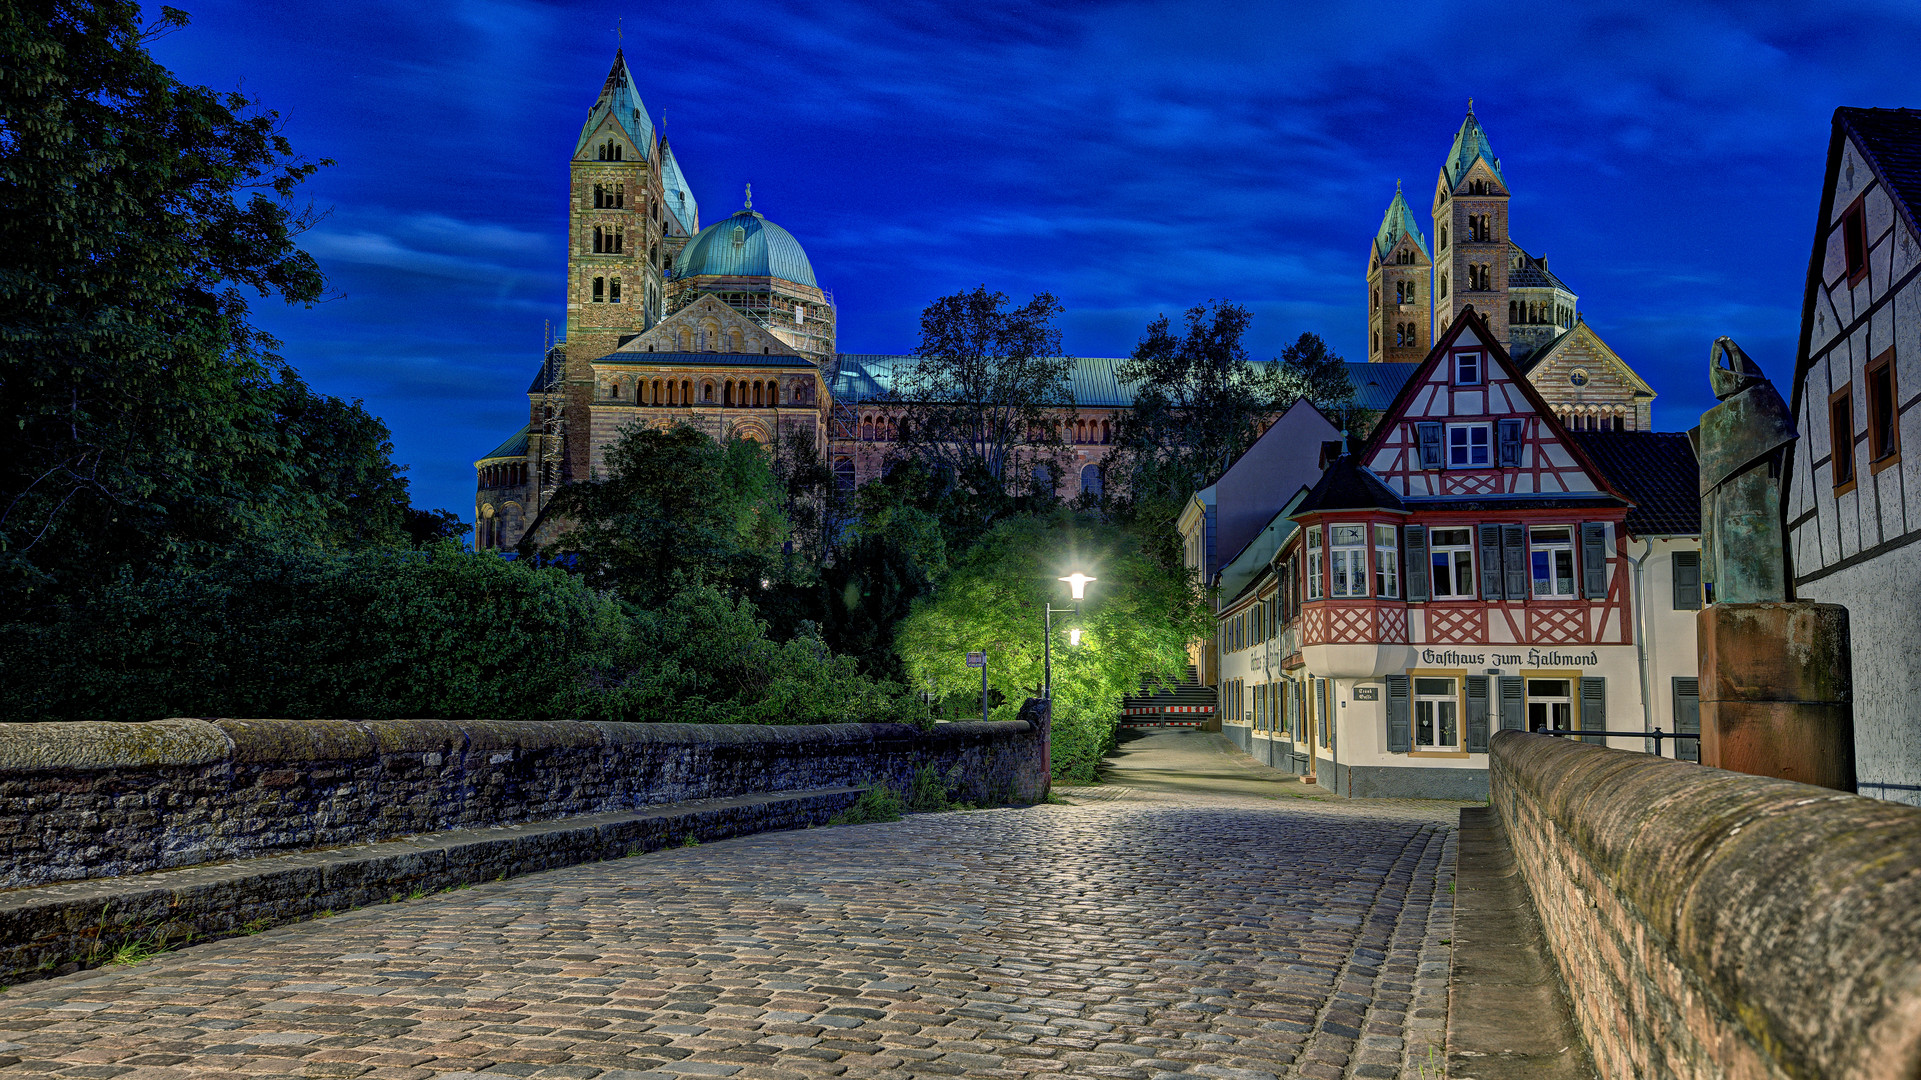 Dom zu Speyer im Nachthimmel